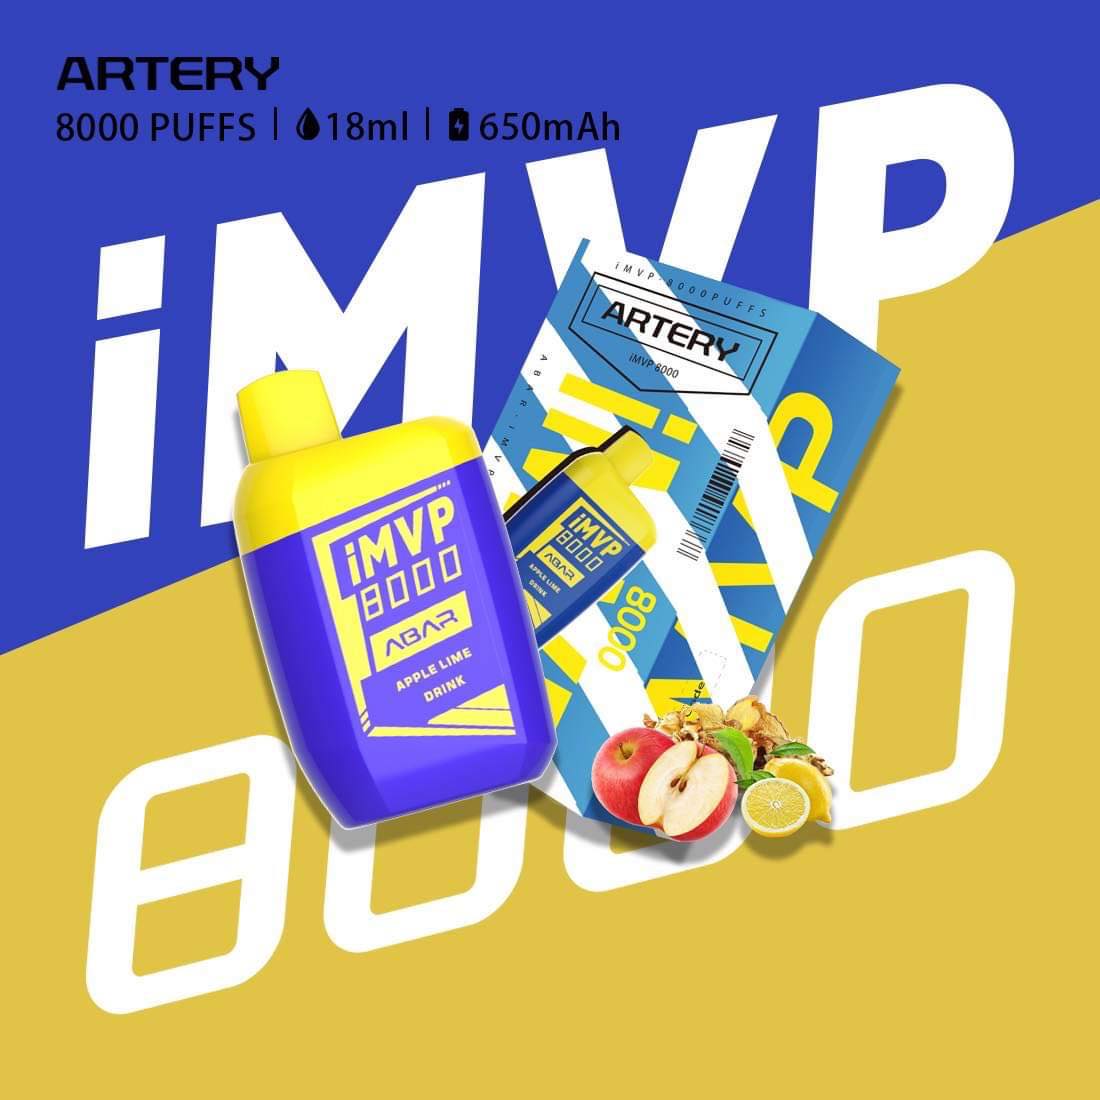 Artery iMVP 8000 Puffs - 7 